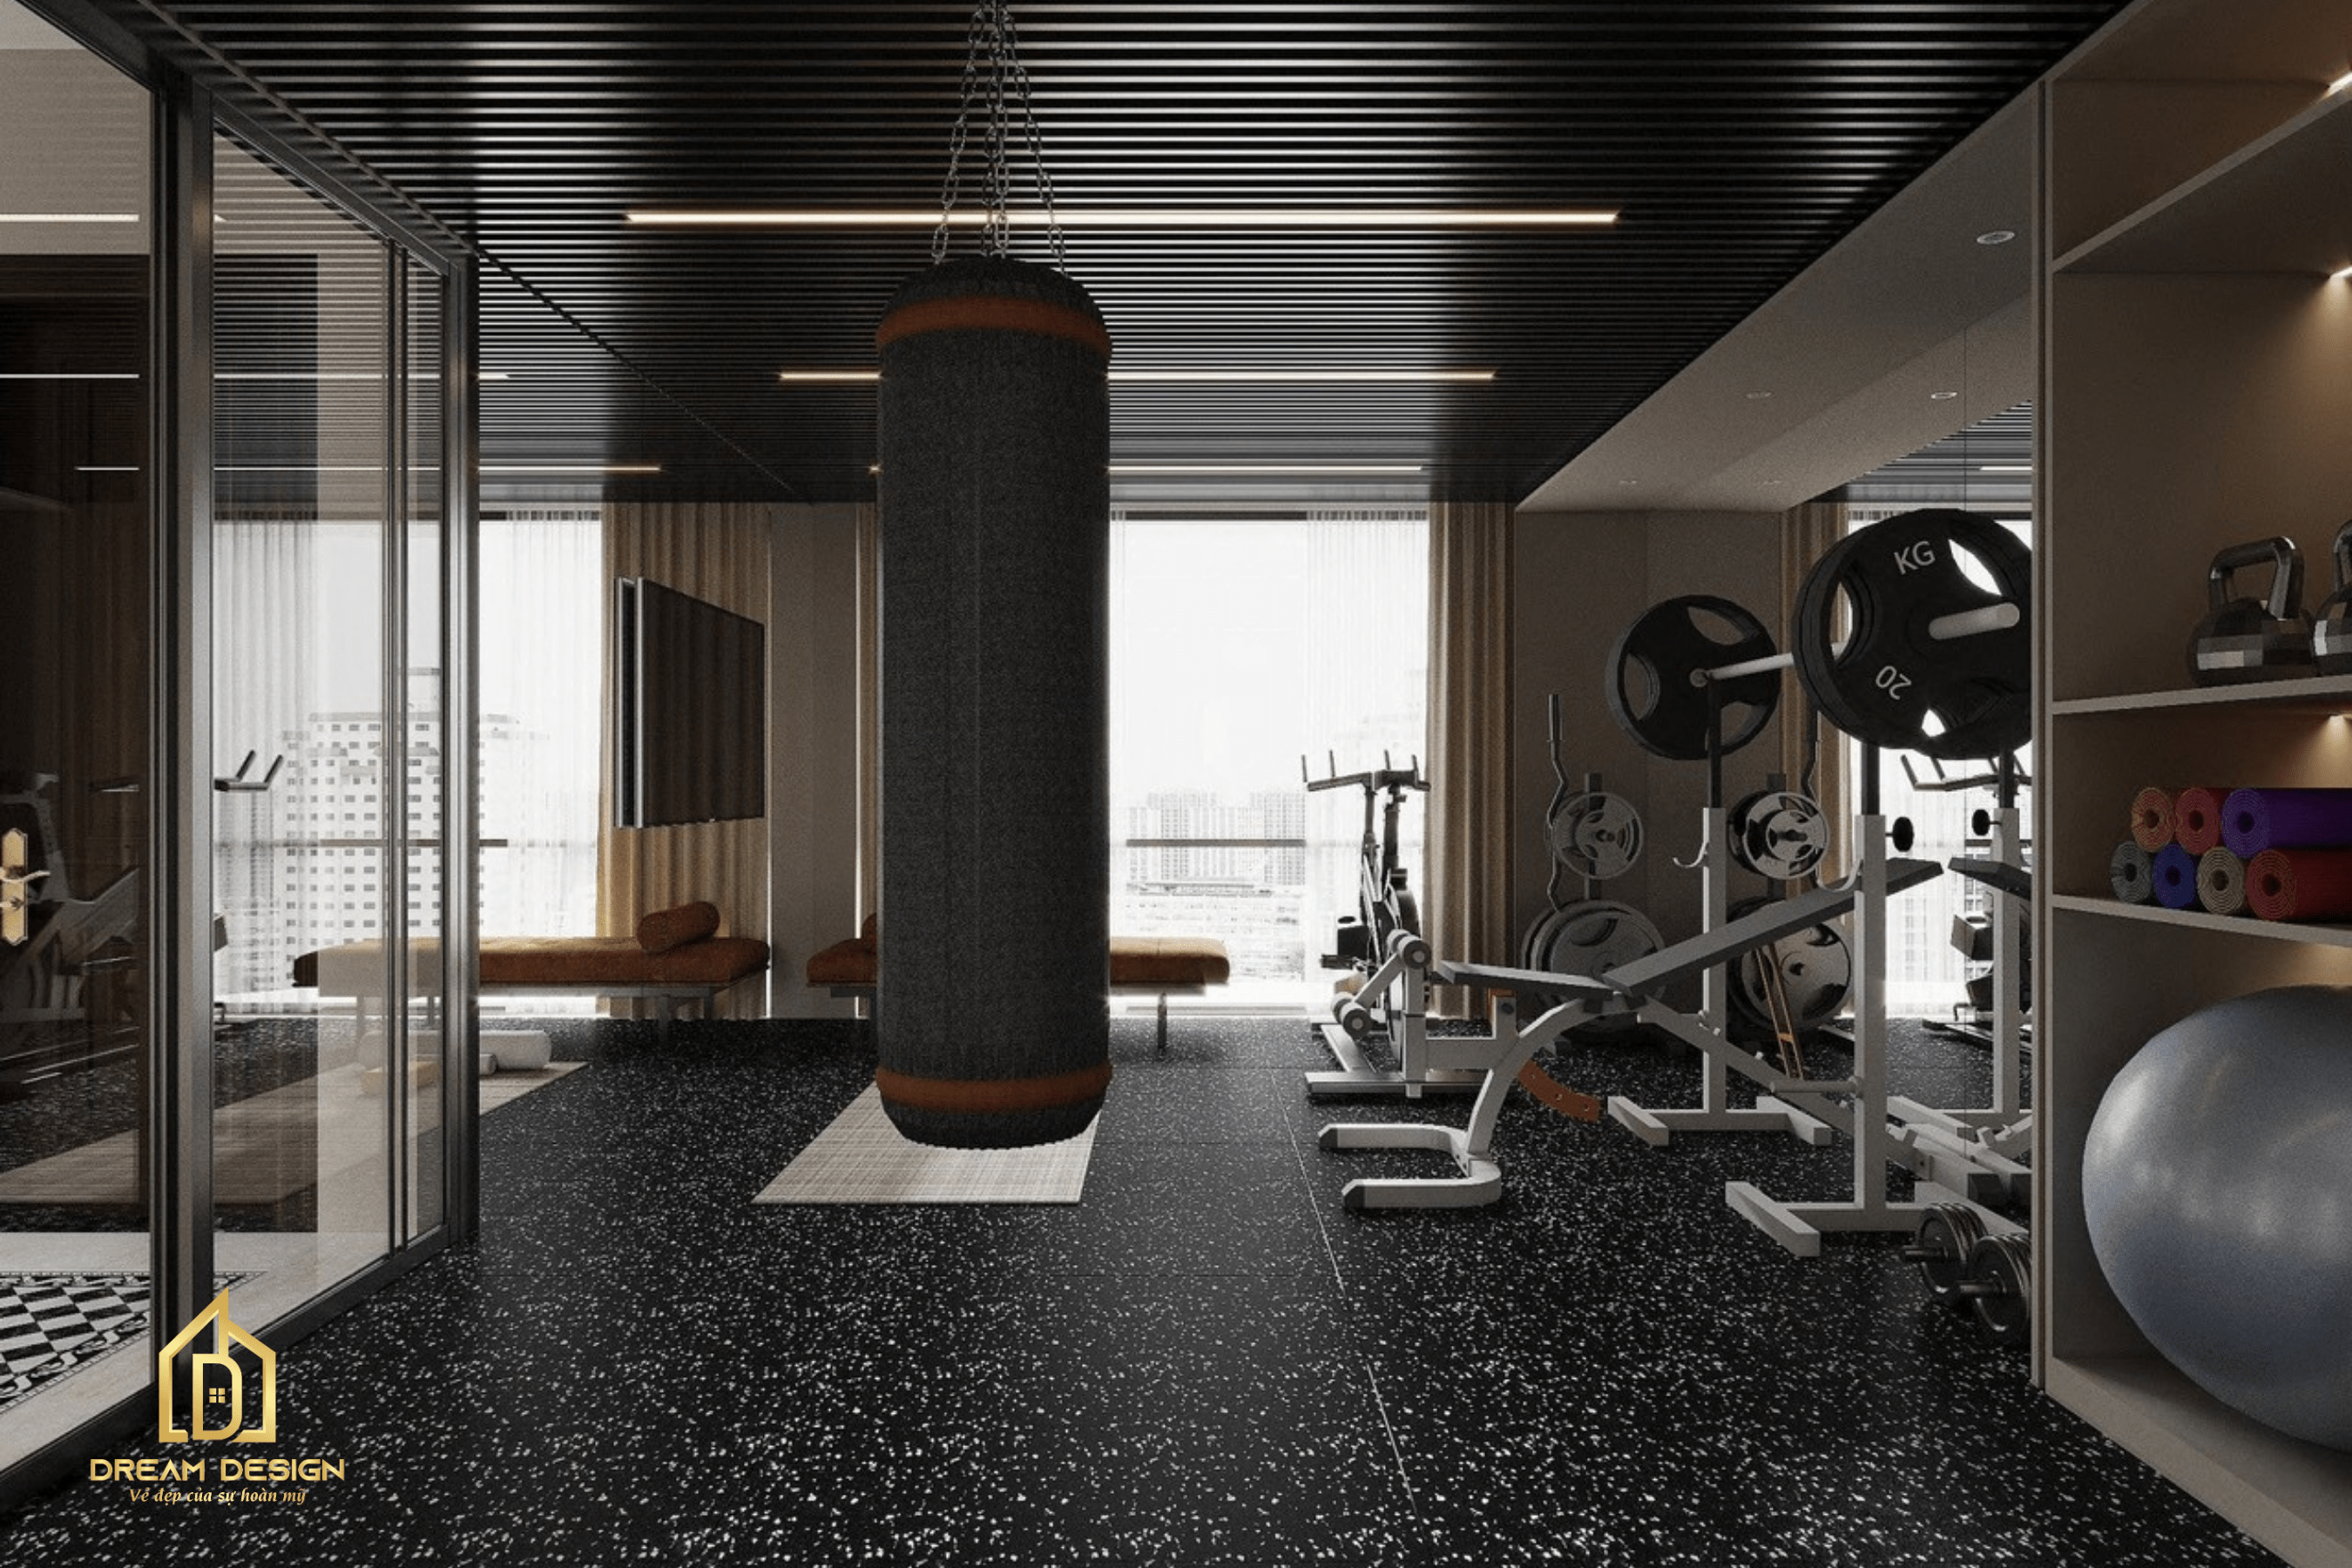  Không gian phòng tập gym đầy năng lượng, nơi khơi dậy nguồn cảm hứng và ý chí vươn lên